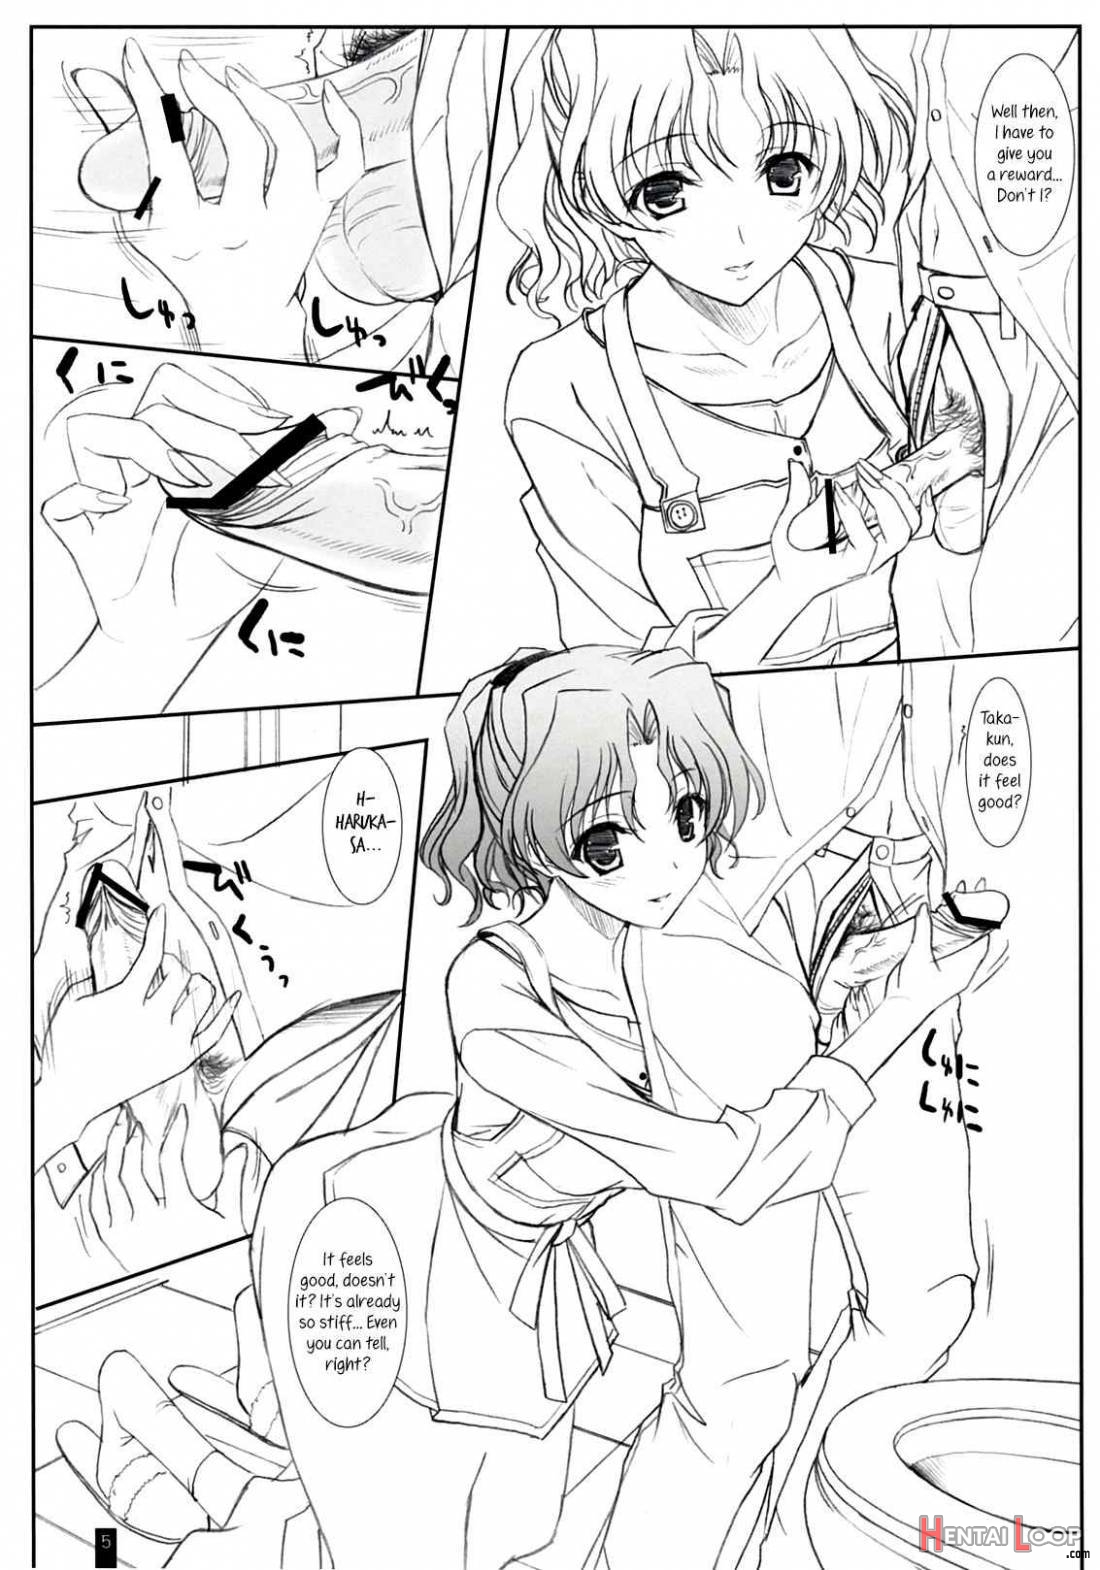 Purity Haruka-san page 4